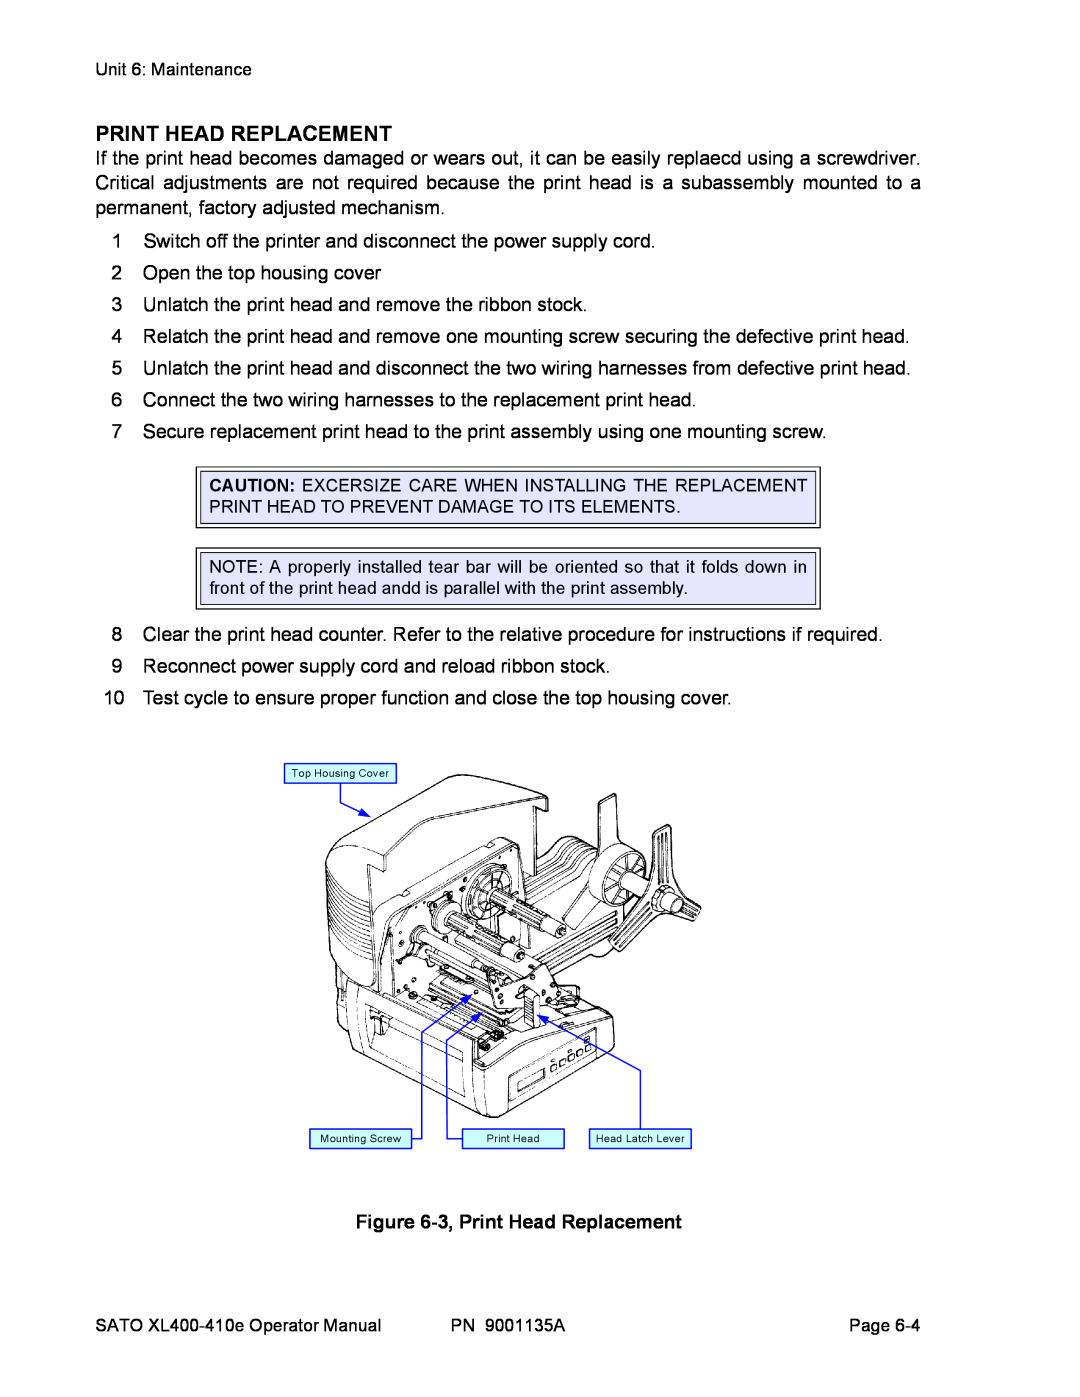 SATO 410e, 400e manual 3, Print Head Replacement 